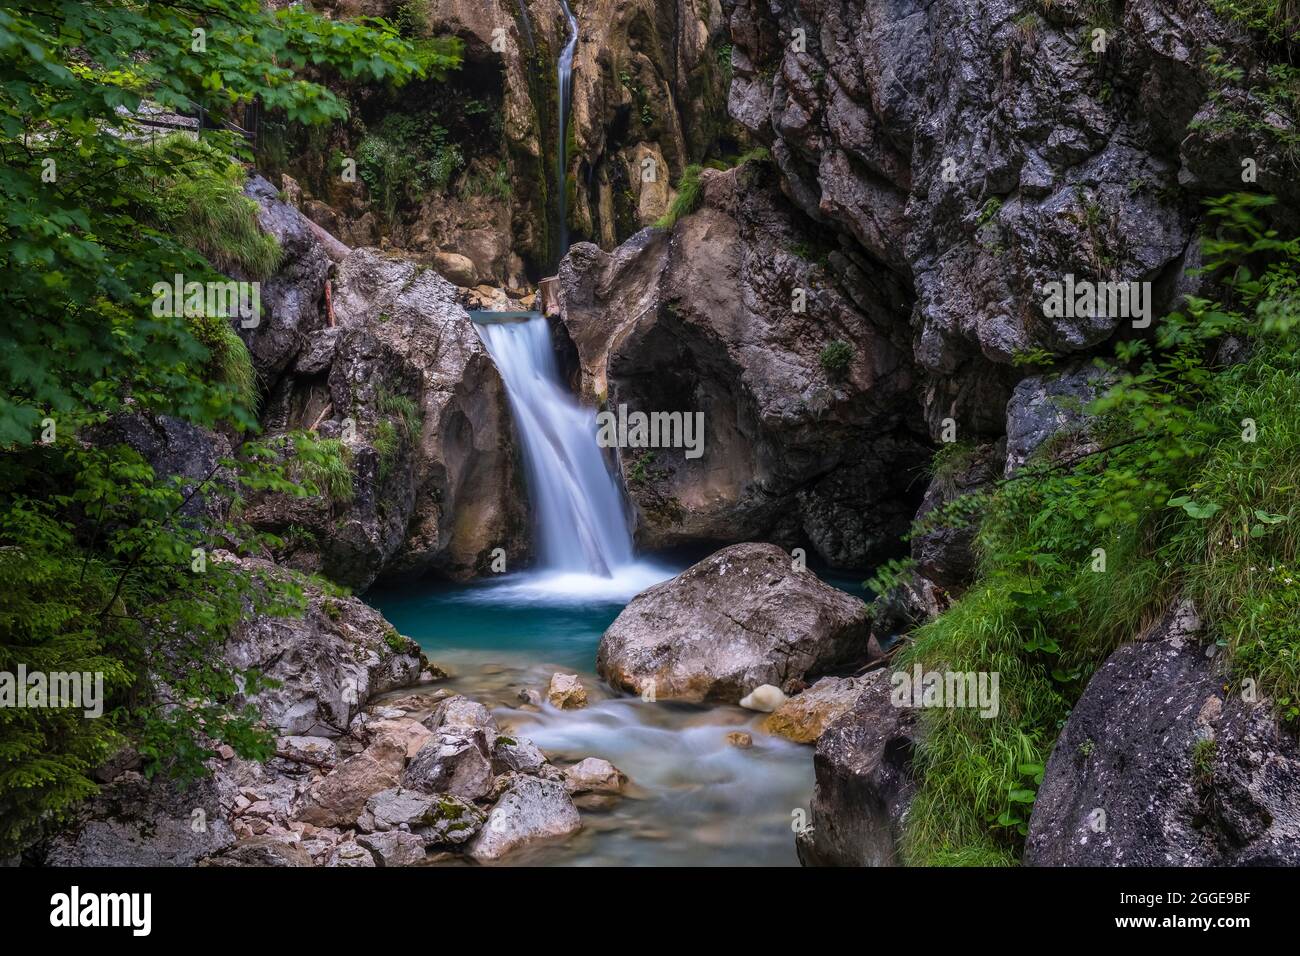 Waterfall in the Tscheppaschlucht, Loibltal, Karawanken, Carinthia, Austria Stock Photo